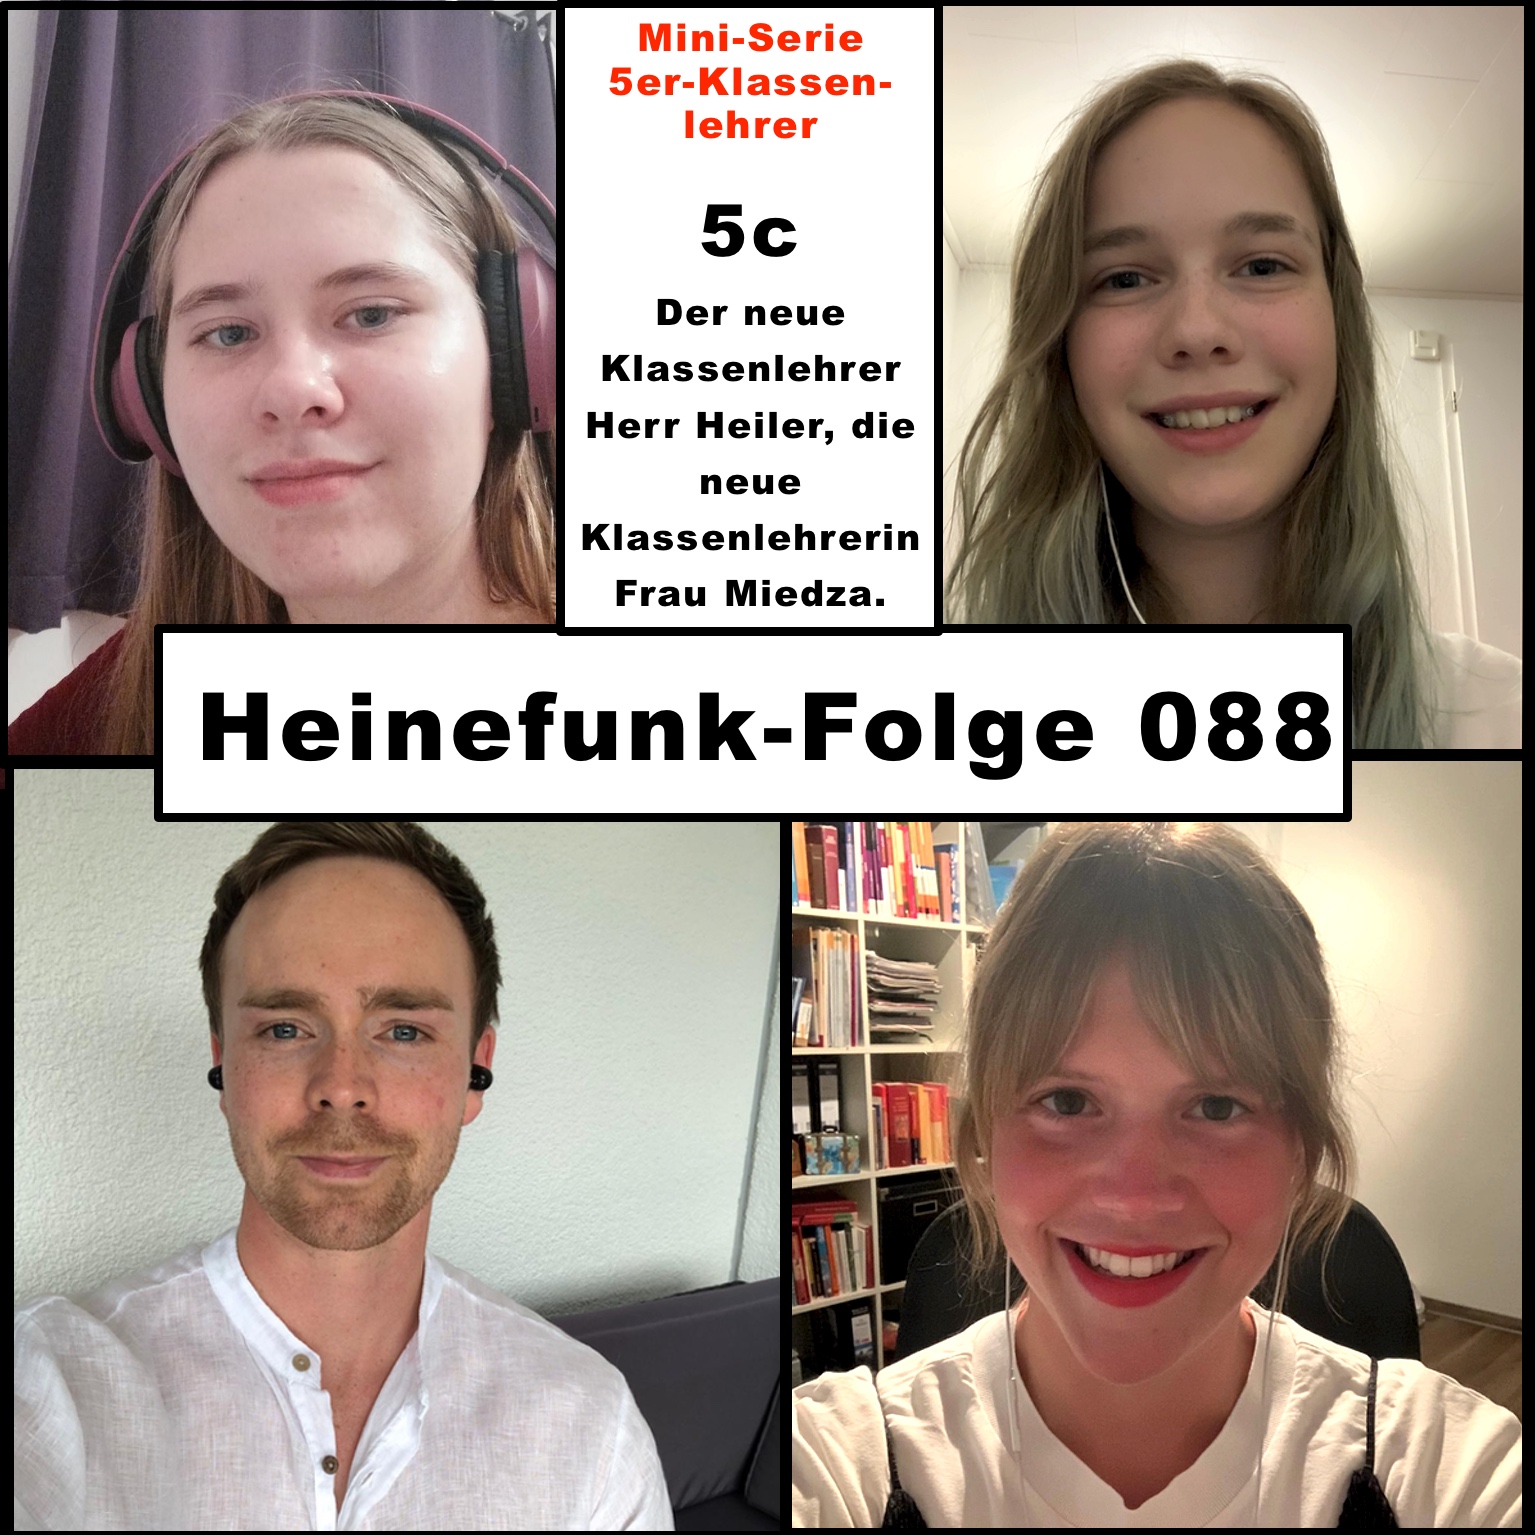 088 heinefunk